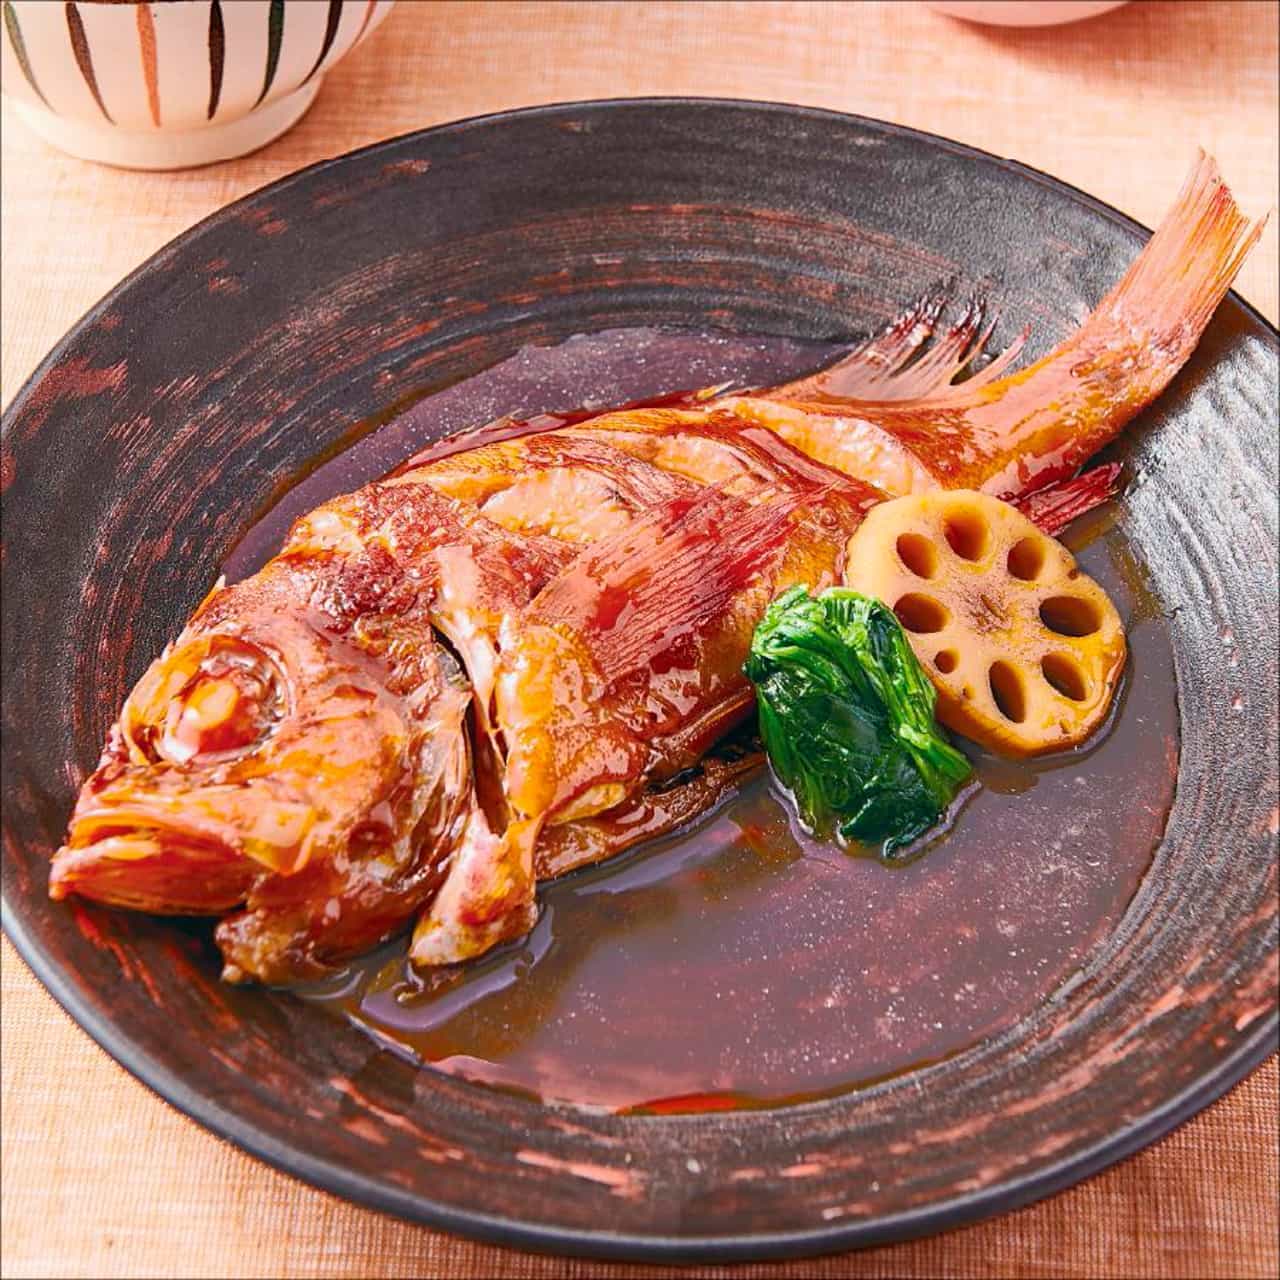 Store-limited menu such as "Boiled menu set meal" at Ootoya